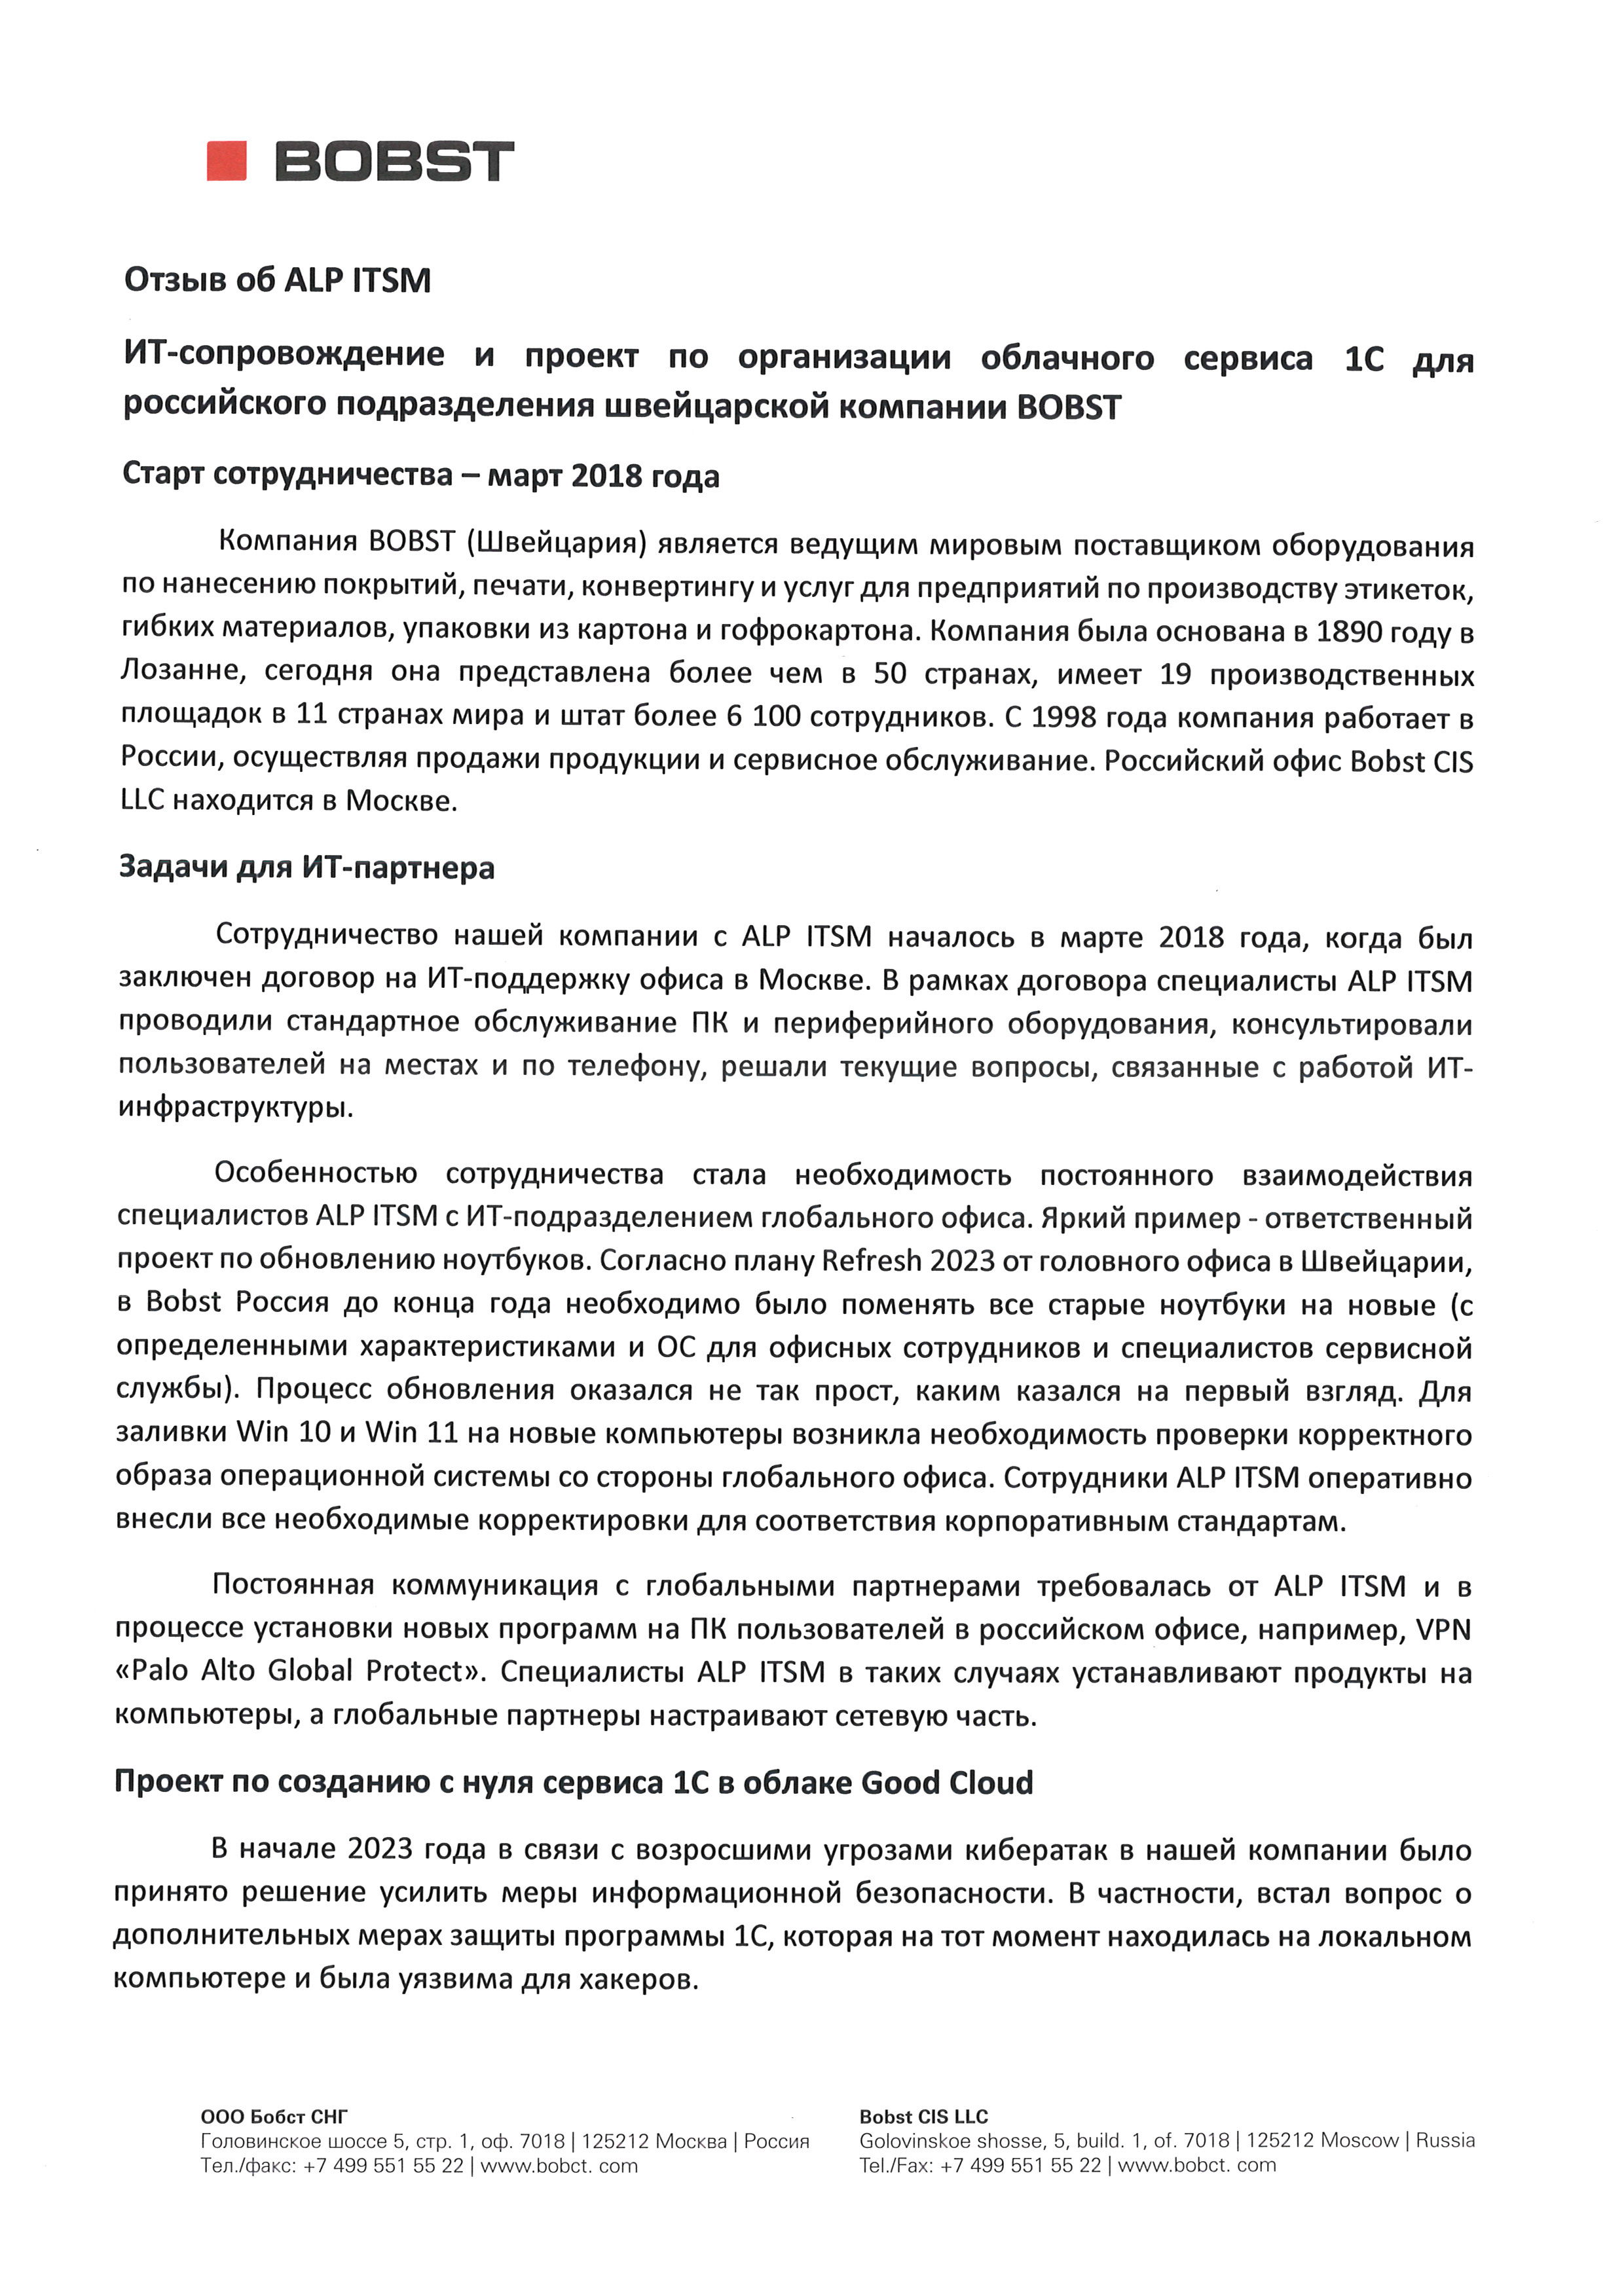 ИТ-сопровождение и проект по организации облачного сервиса 1С для российского подразделения швейцарской компании BOBST страница 1